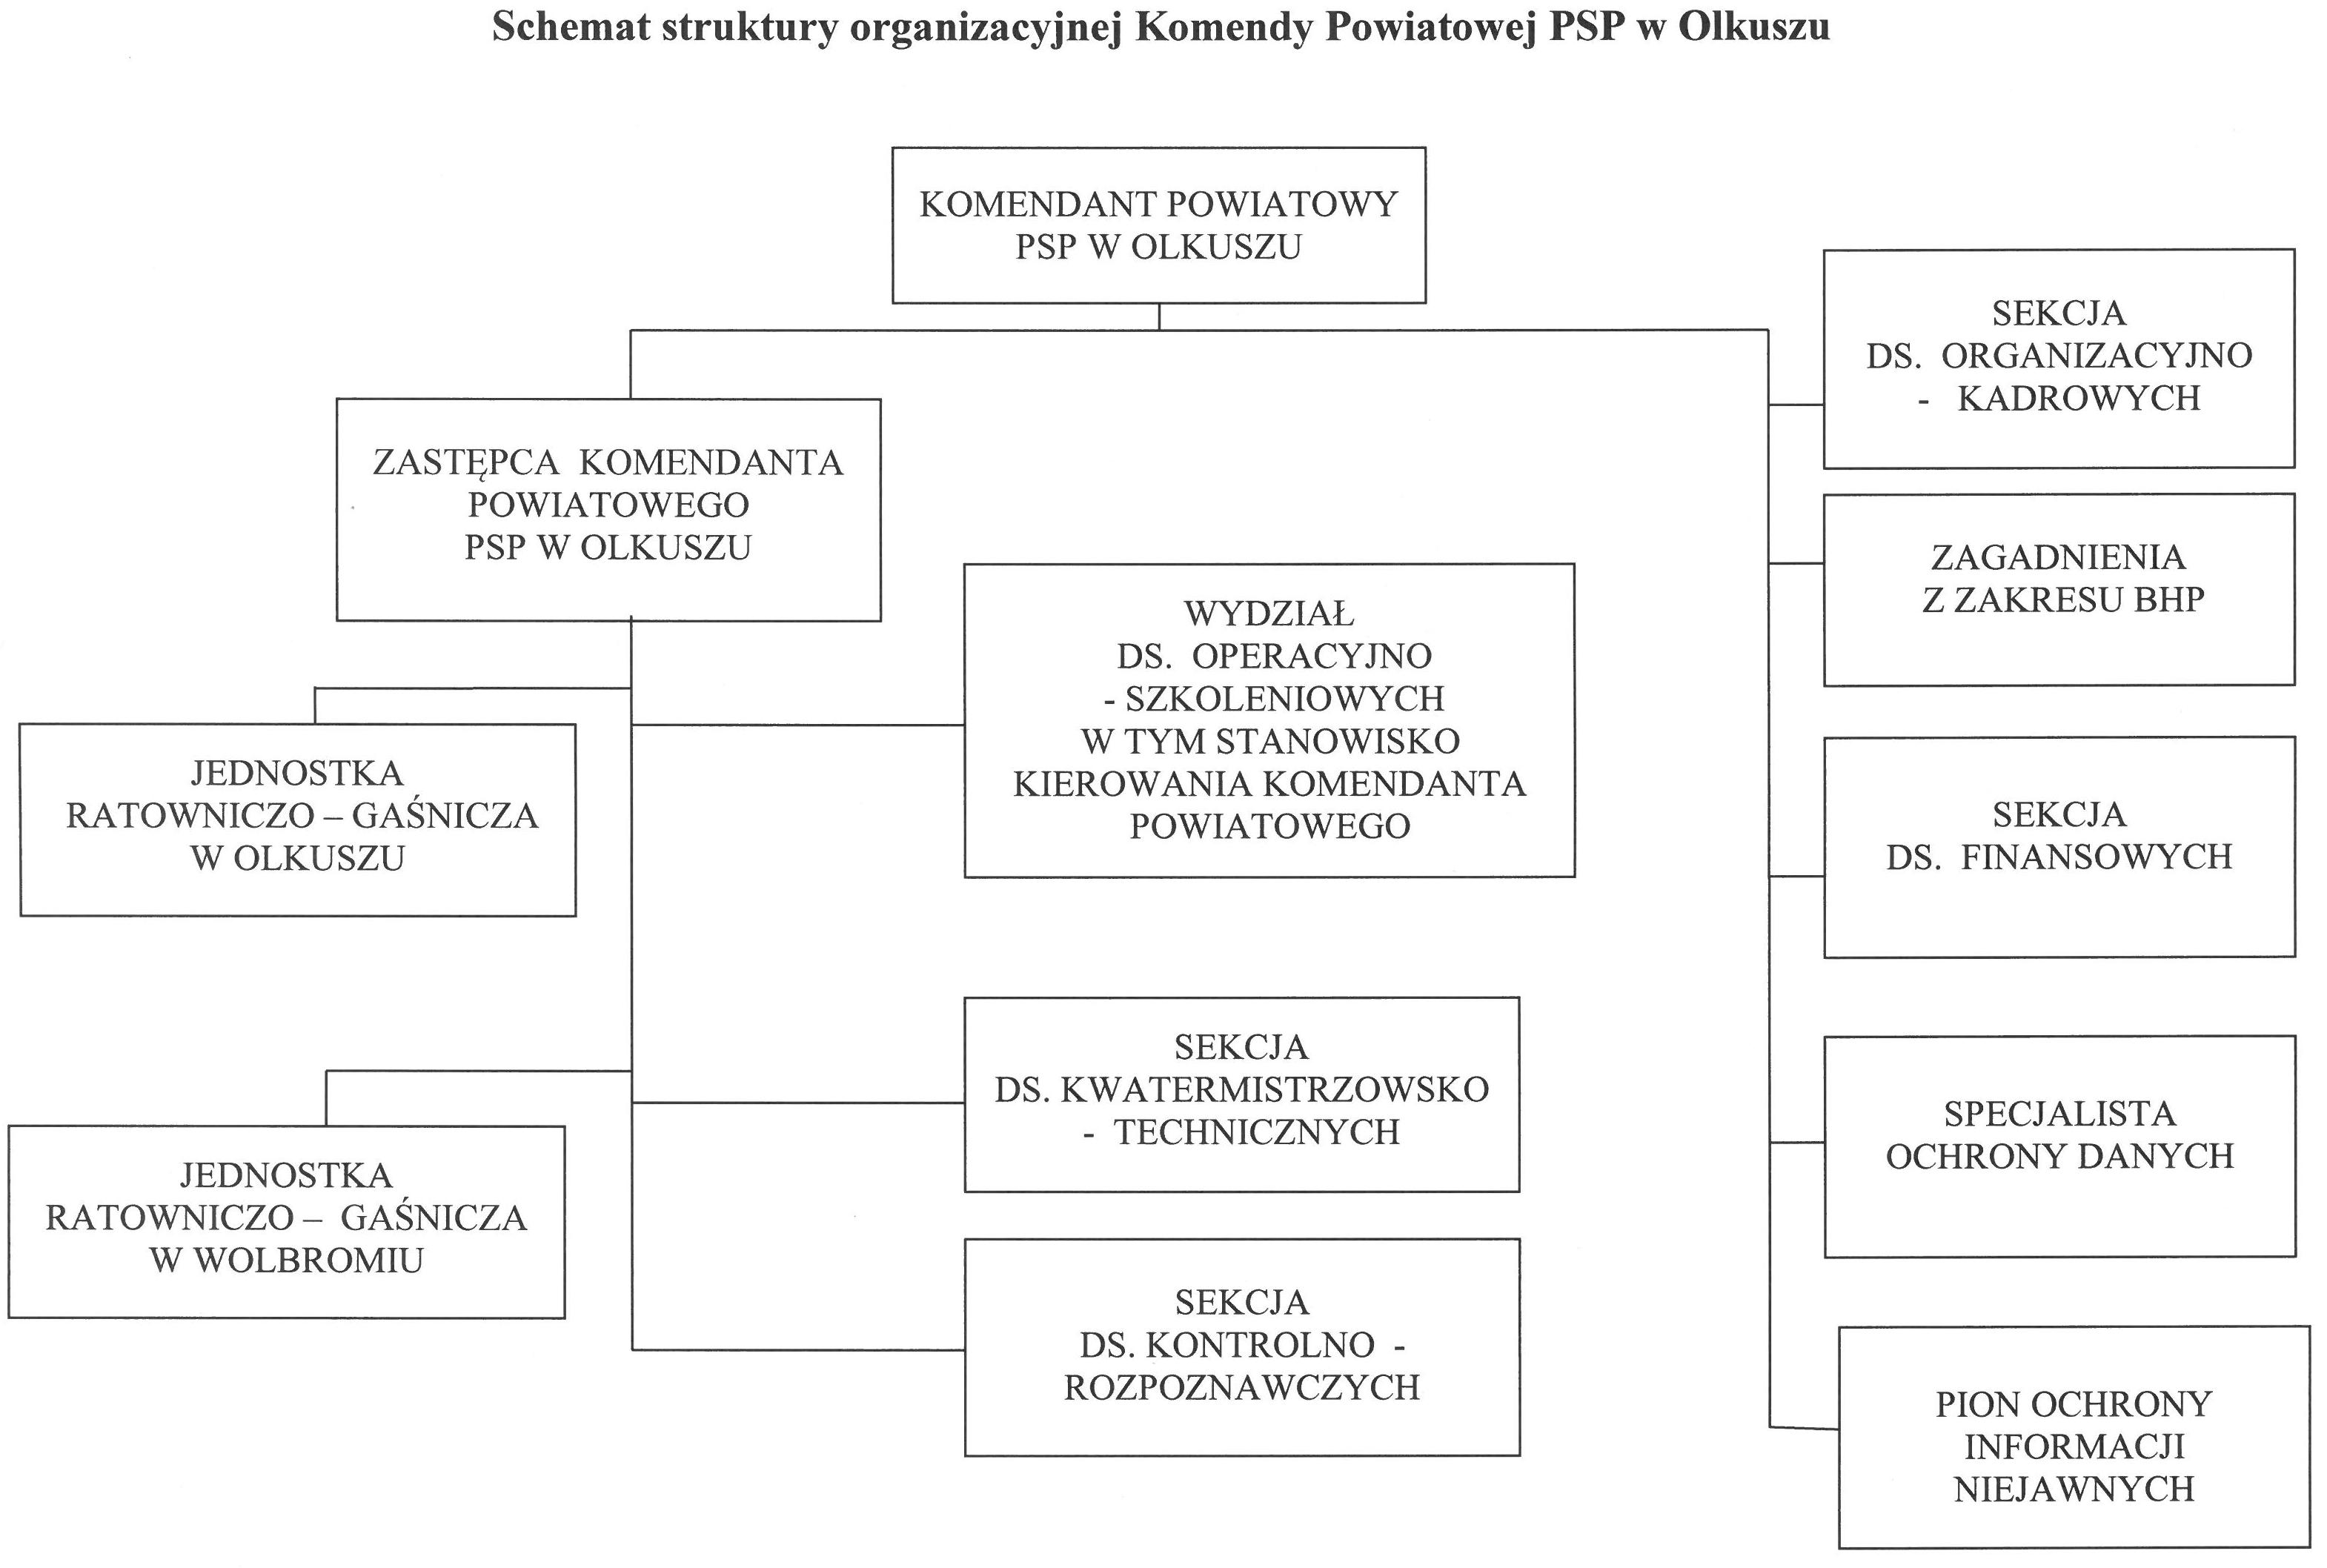 Schemat organizacyjny KP PSP Olkusz